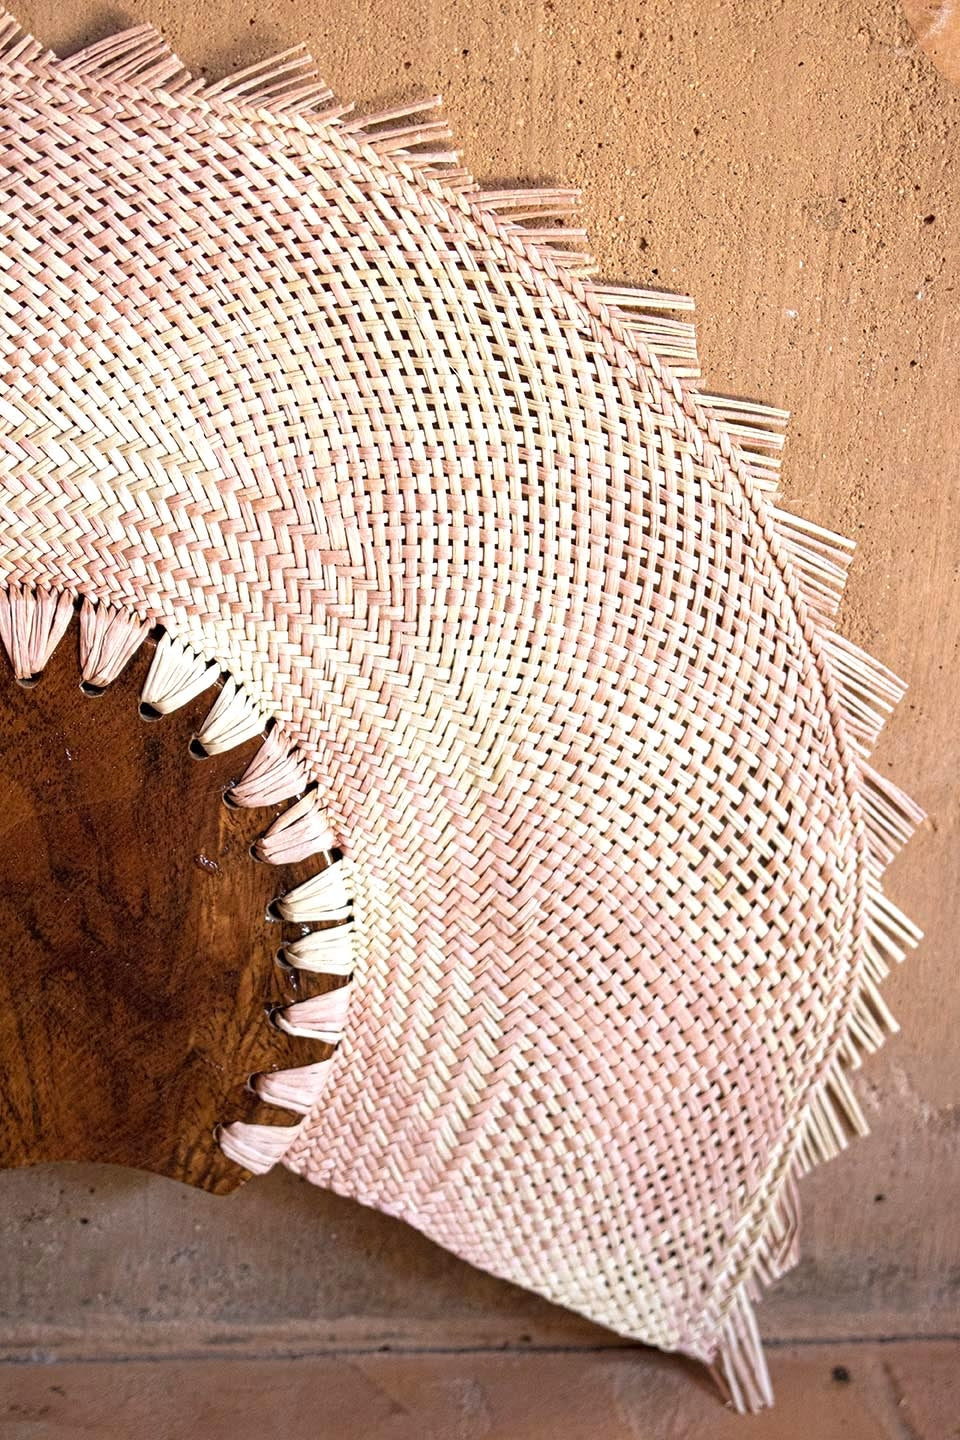 handwoven palm fan